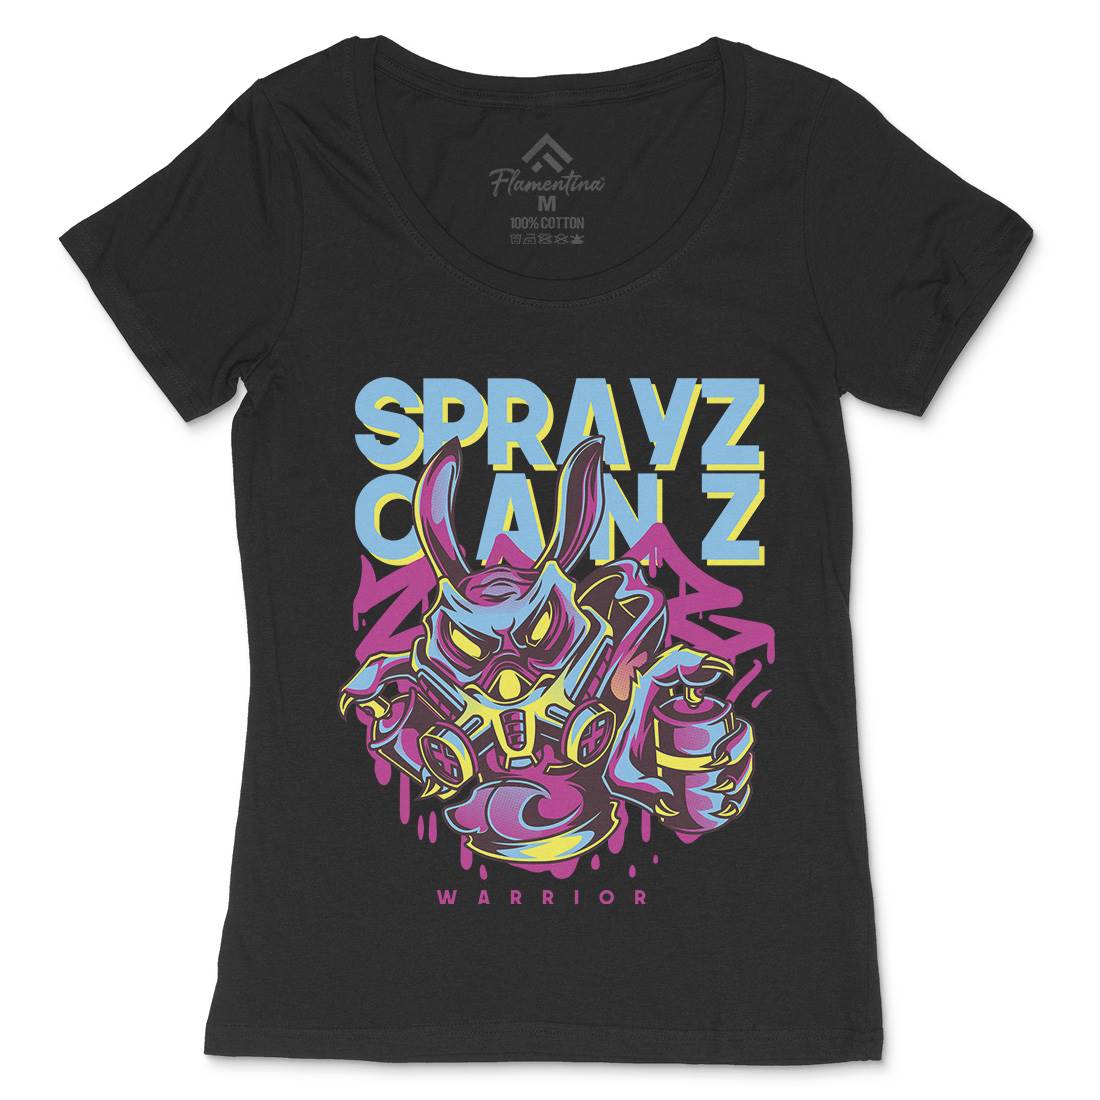 Spray Cans Womens Scoop Neck T-Shirt Graffiti D833